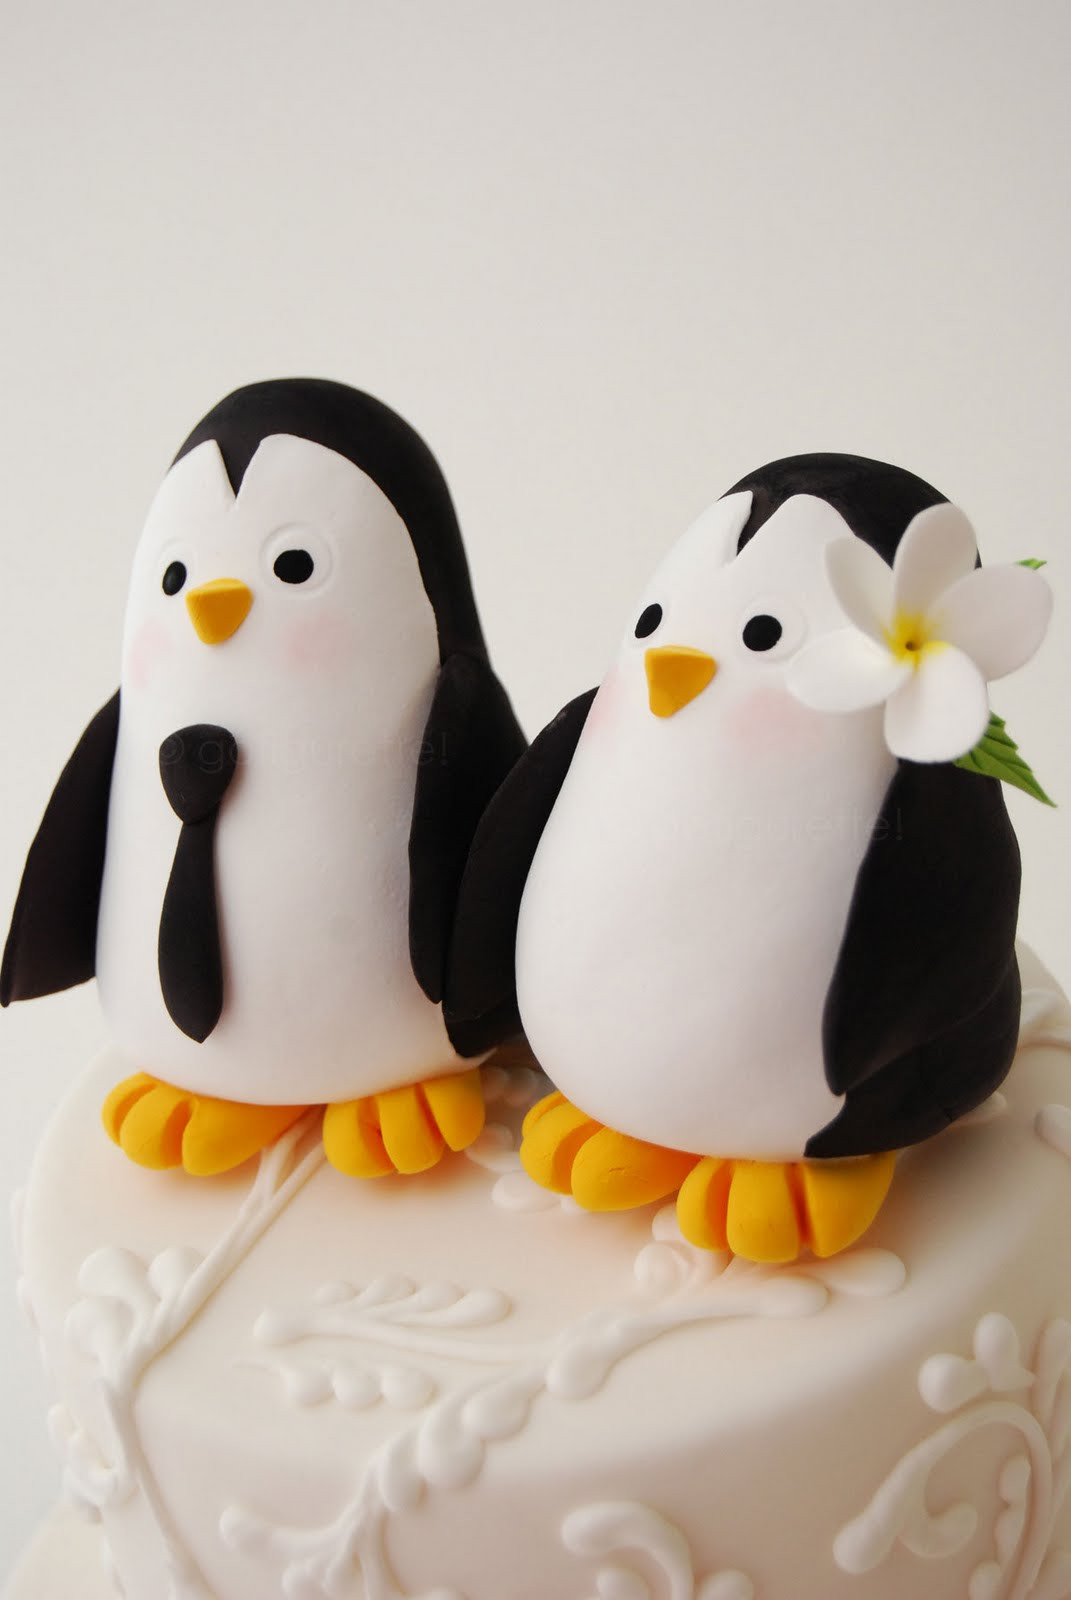 Penguin Wedding Cake Topper
 gofigurette Penguin Bride & Groom Cake Topper